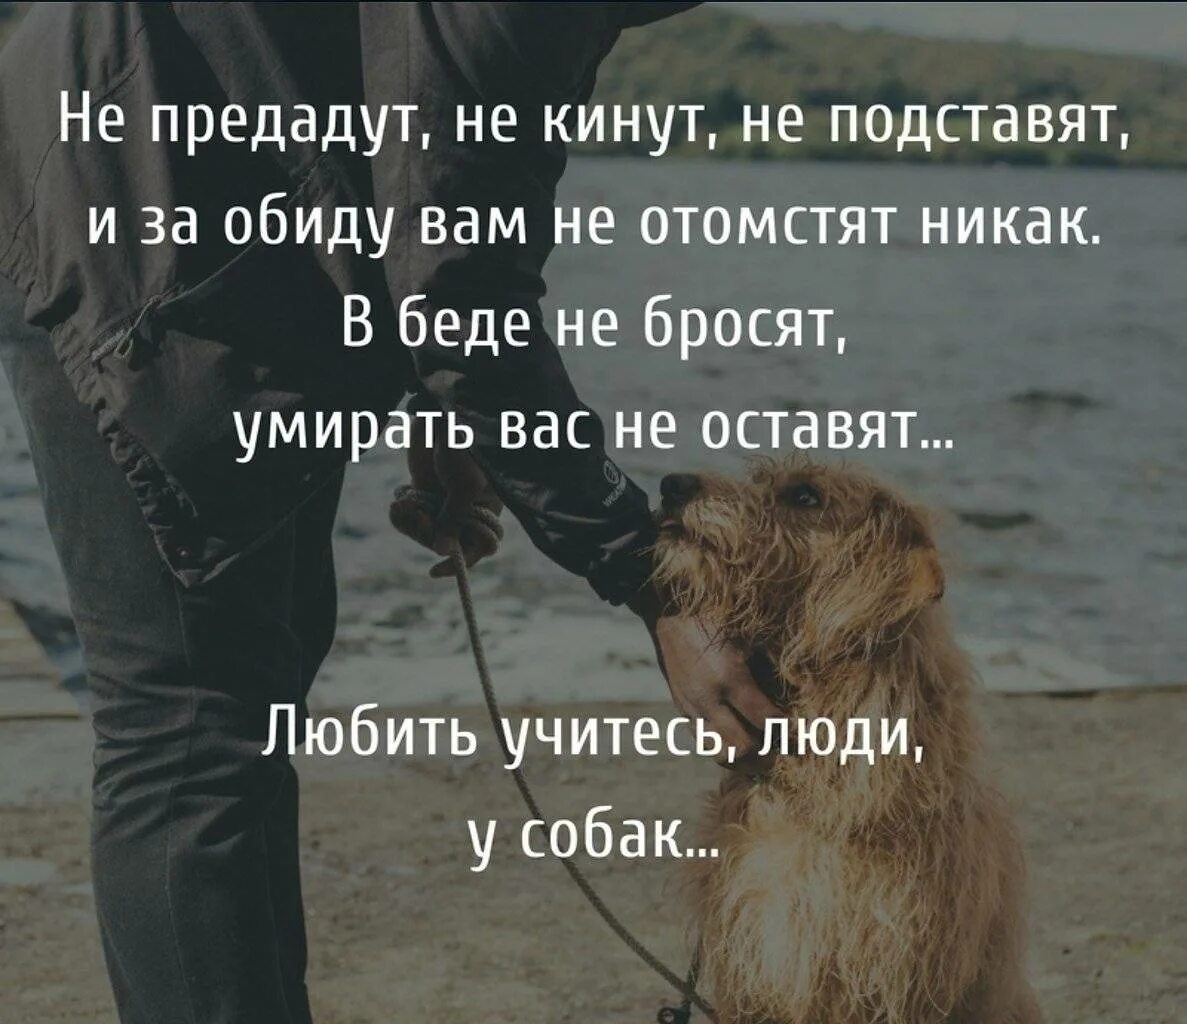 Цитаты про собак. Афоризмы про собак и людей. Собака и человек цитаты. Любите животных цитаты. Смелый всегда найдет